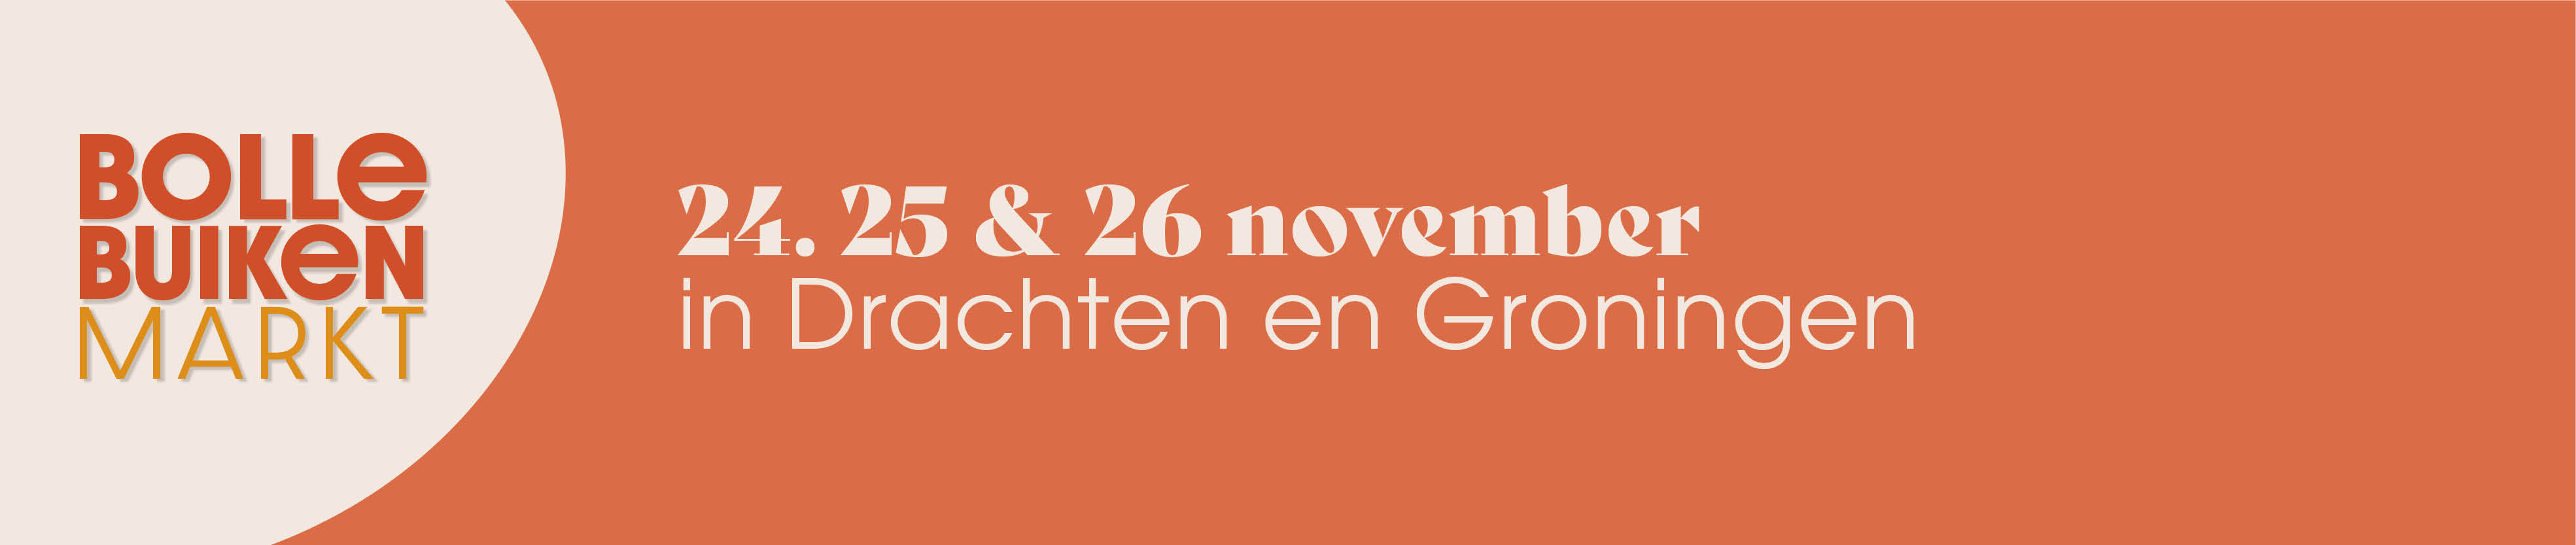 Bolle Buiken Markt 24,25 en 26 november in Drachten en Groningen